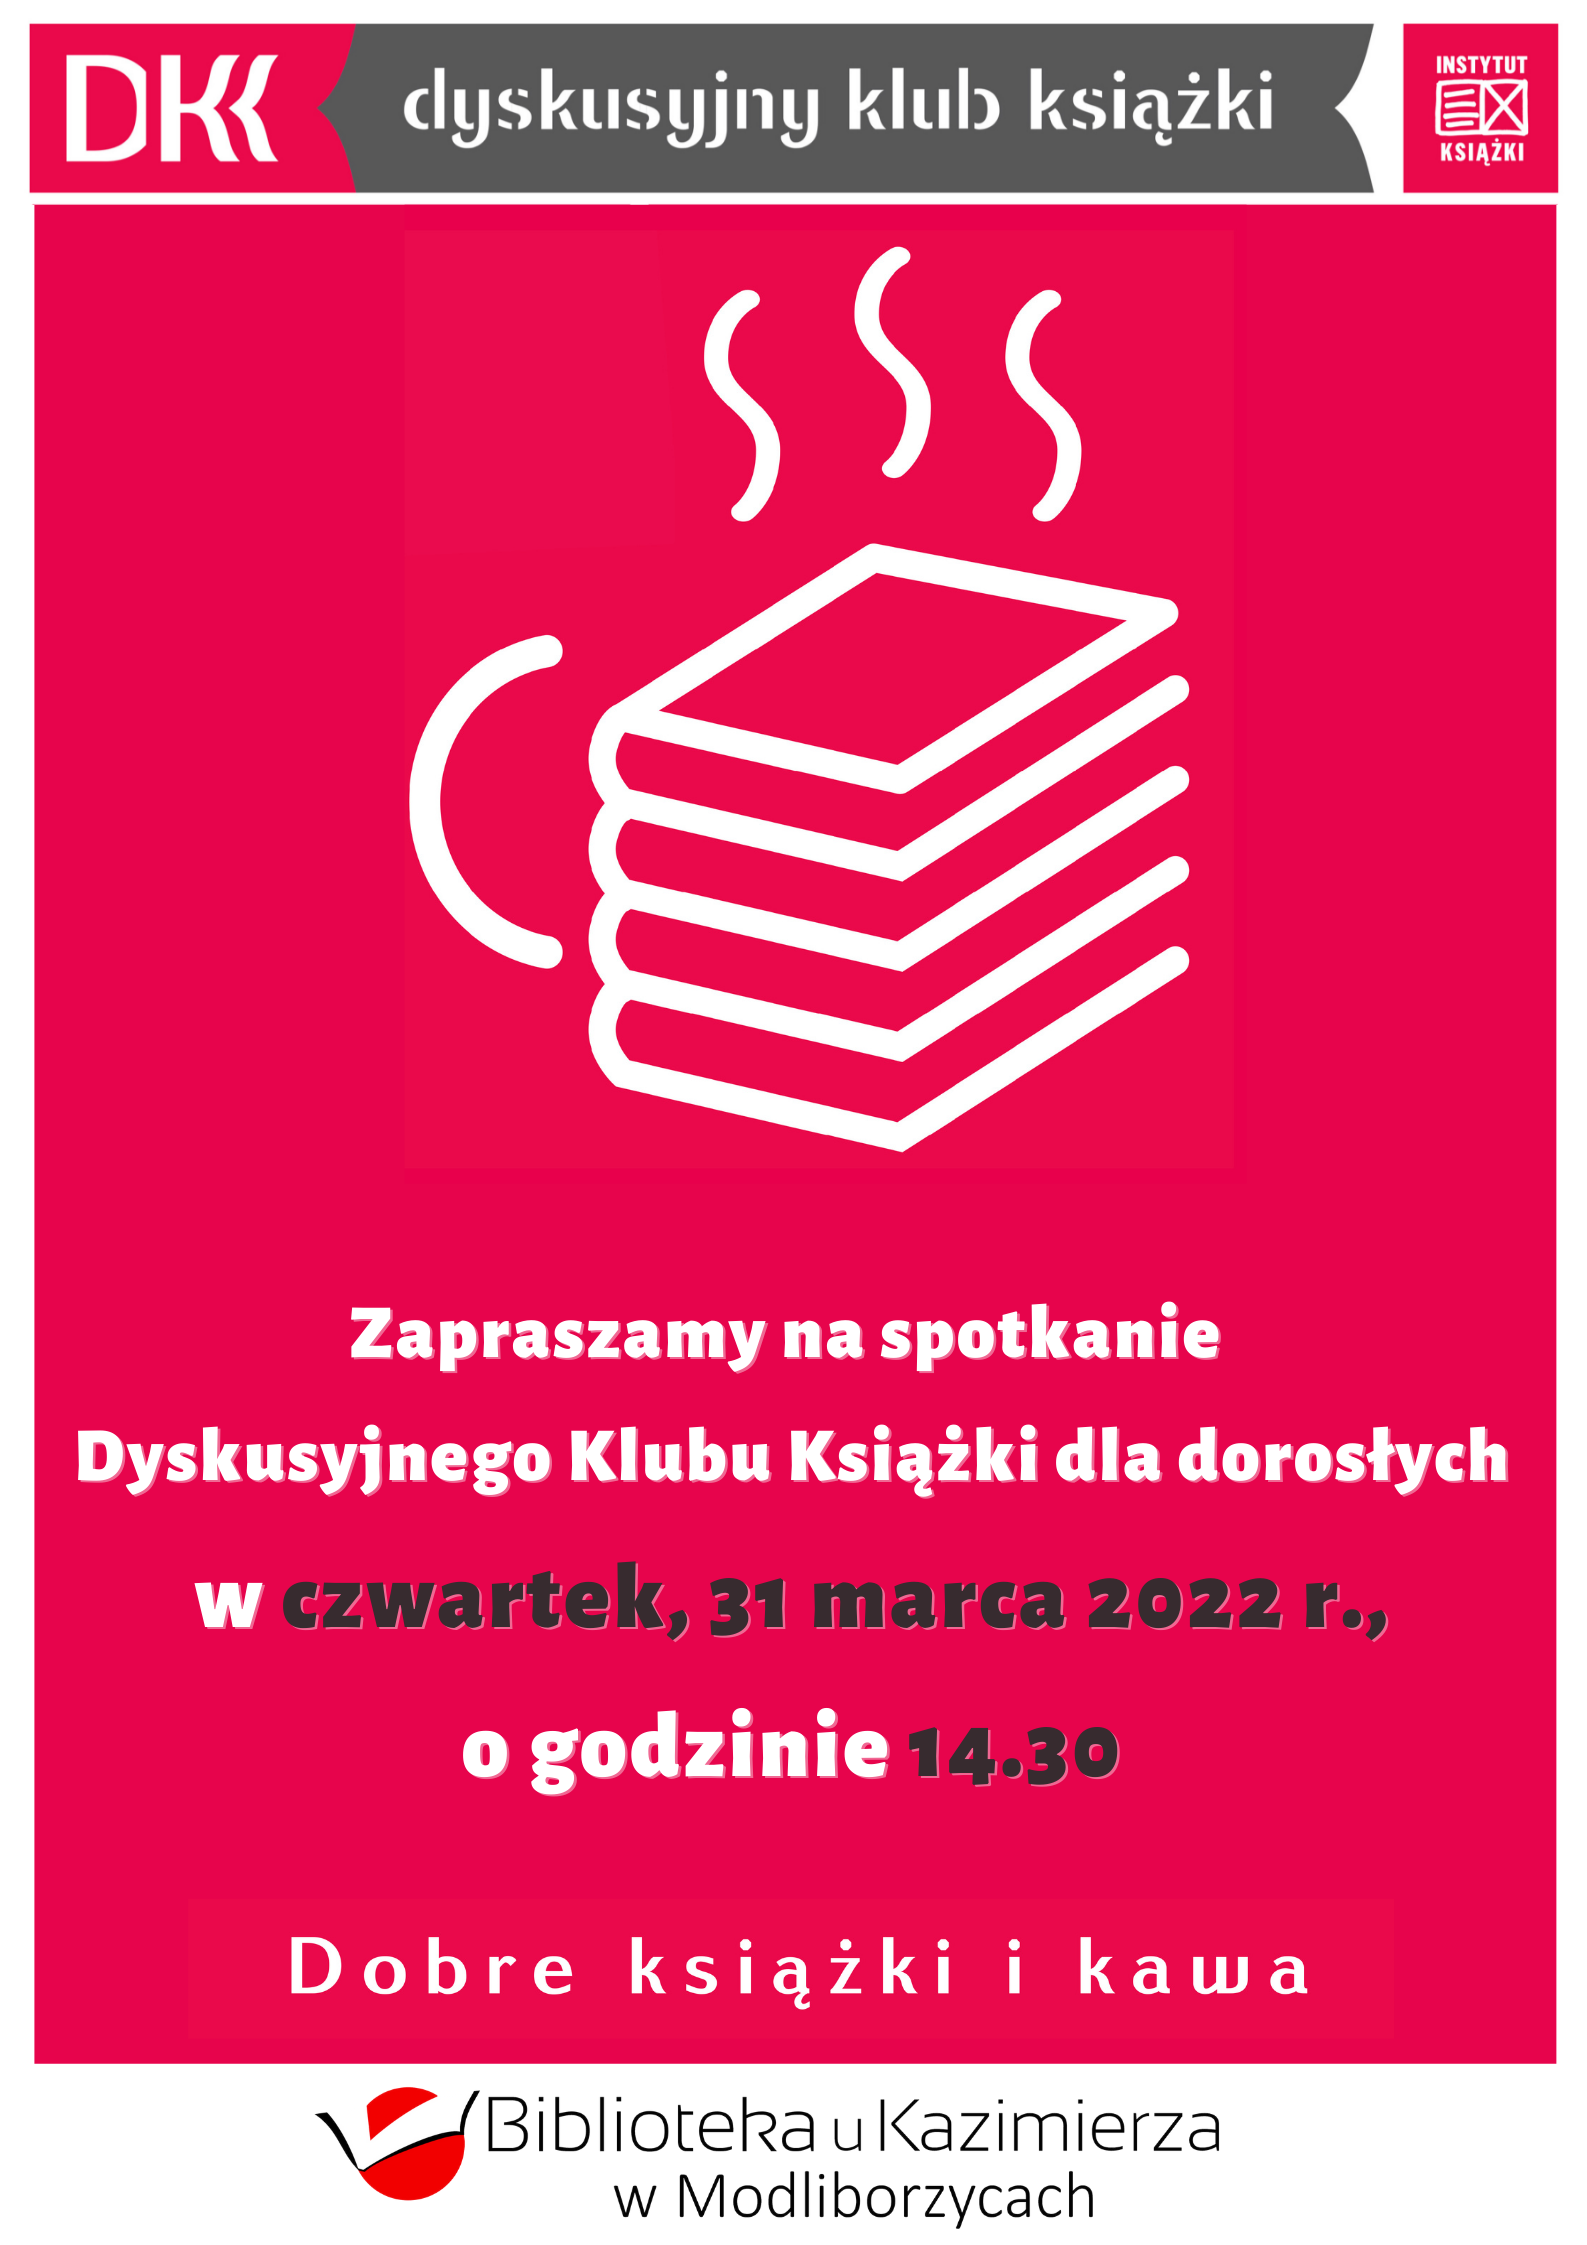 Zapraszamy na spotkanie Dyskusyjnego Klubu Książki dla dorosłych w czwartek, 31 marca 2022 r., o godzinie 14.30 w bibliotece. Logo DKK, Instytutu Książki w Krakowie, biblioteki. 